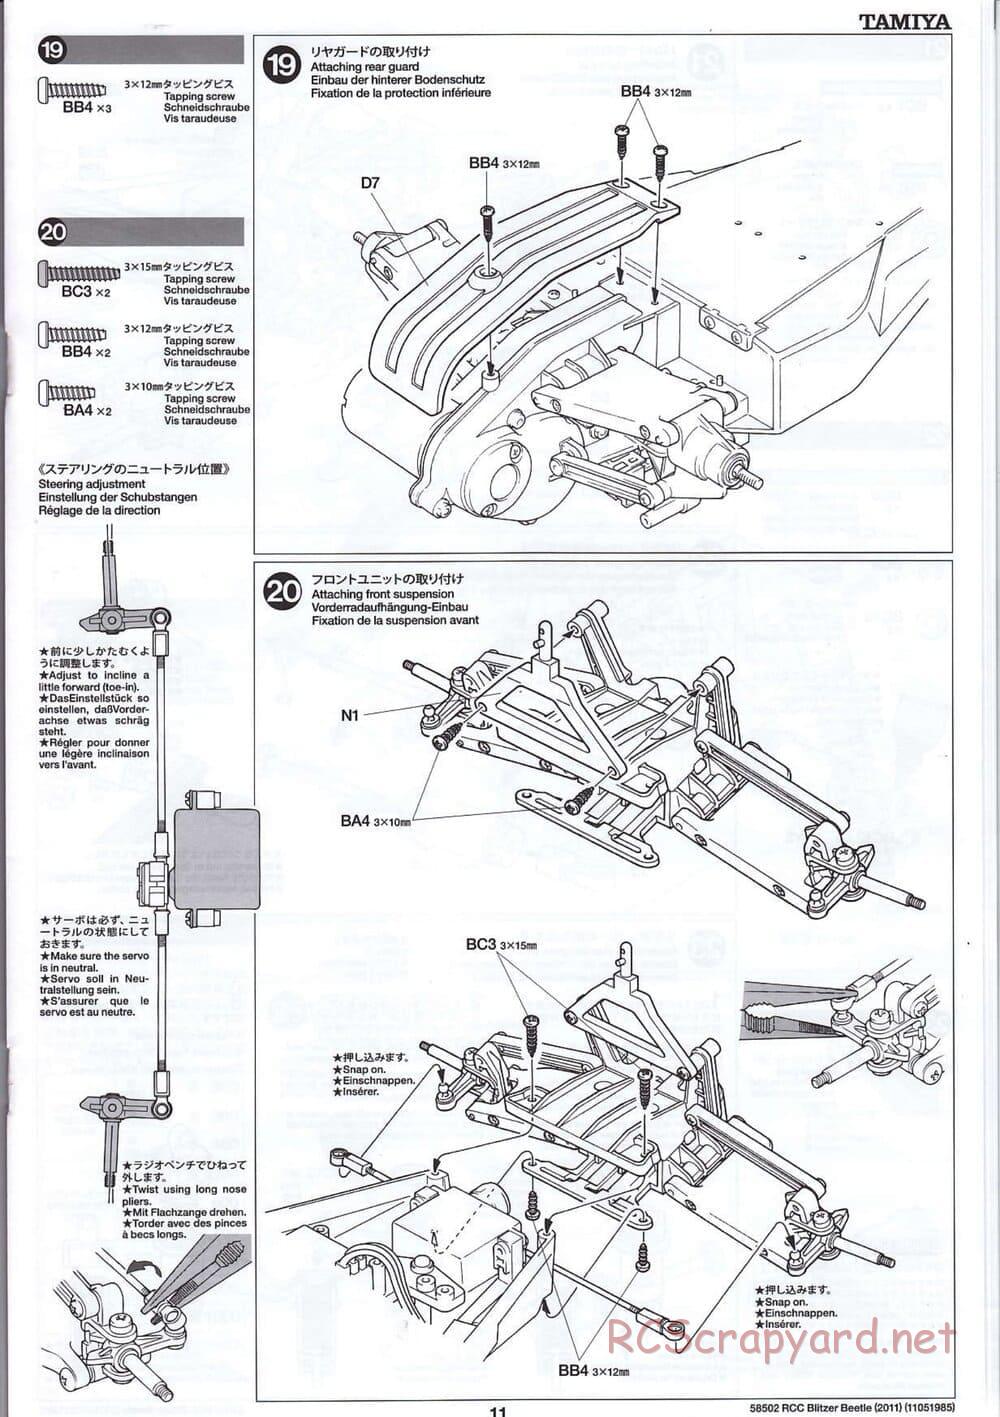 Tamiya - Blitzer Beetle 2011 - FAL Chassis - Manual - Page 11